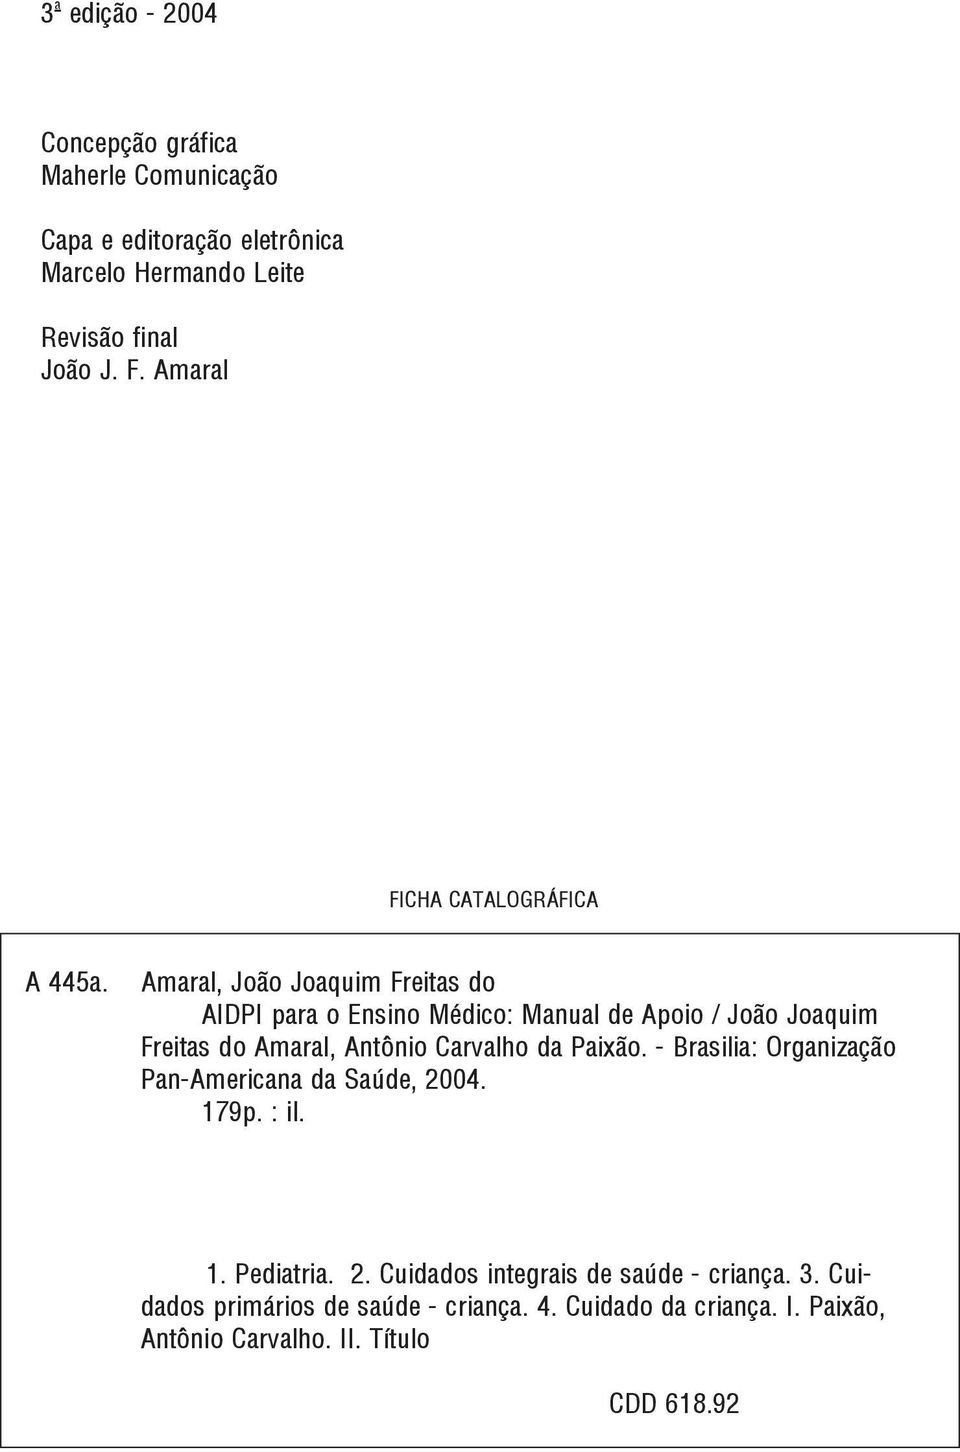 Amaral, João Joaquim Freitas do AIDPI para o Ensino Médico: Manual de Apoio / João Joaquim Freitas do Amaral, Antônio Carvalho da